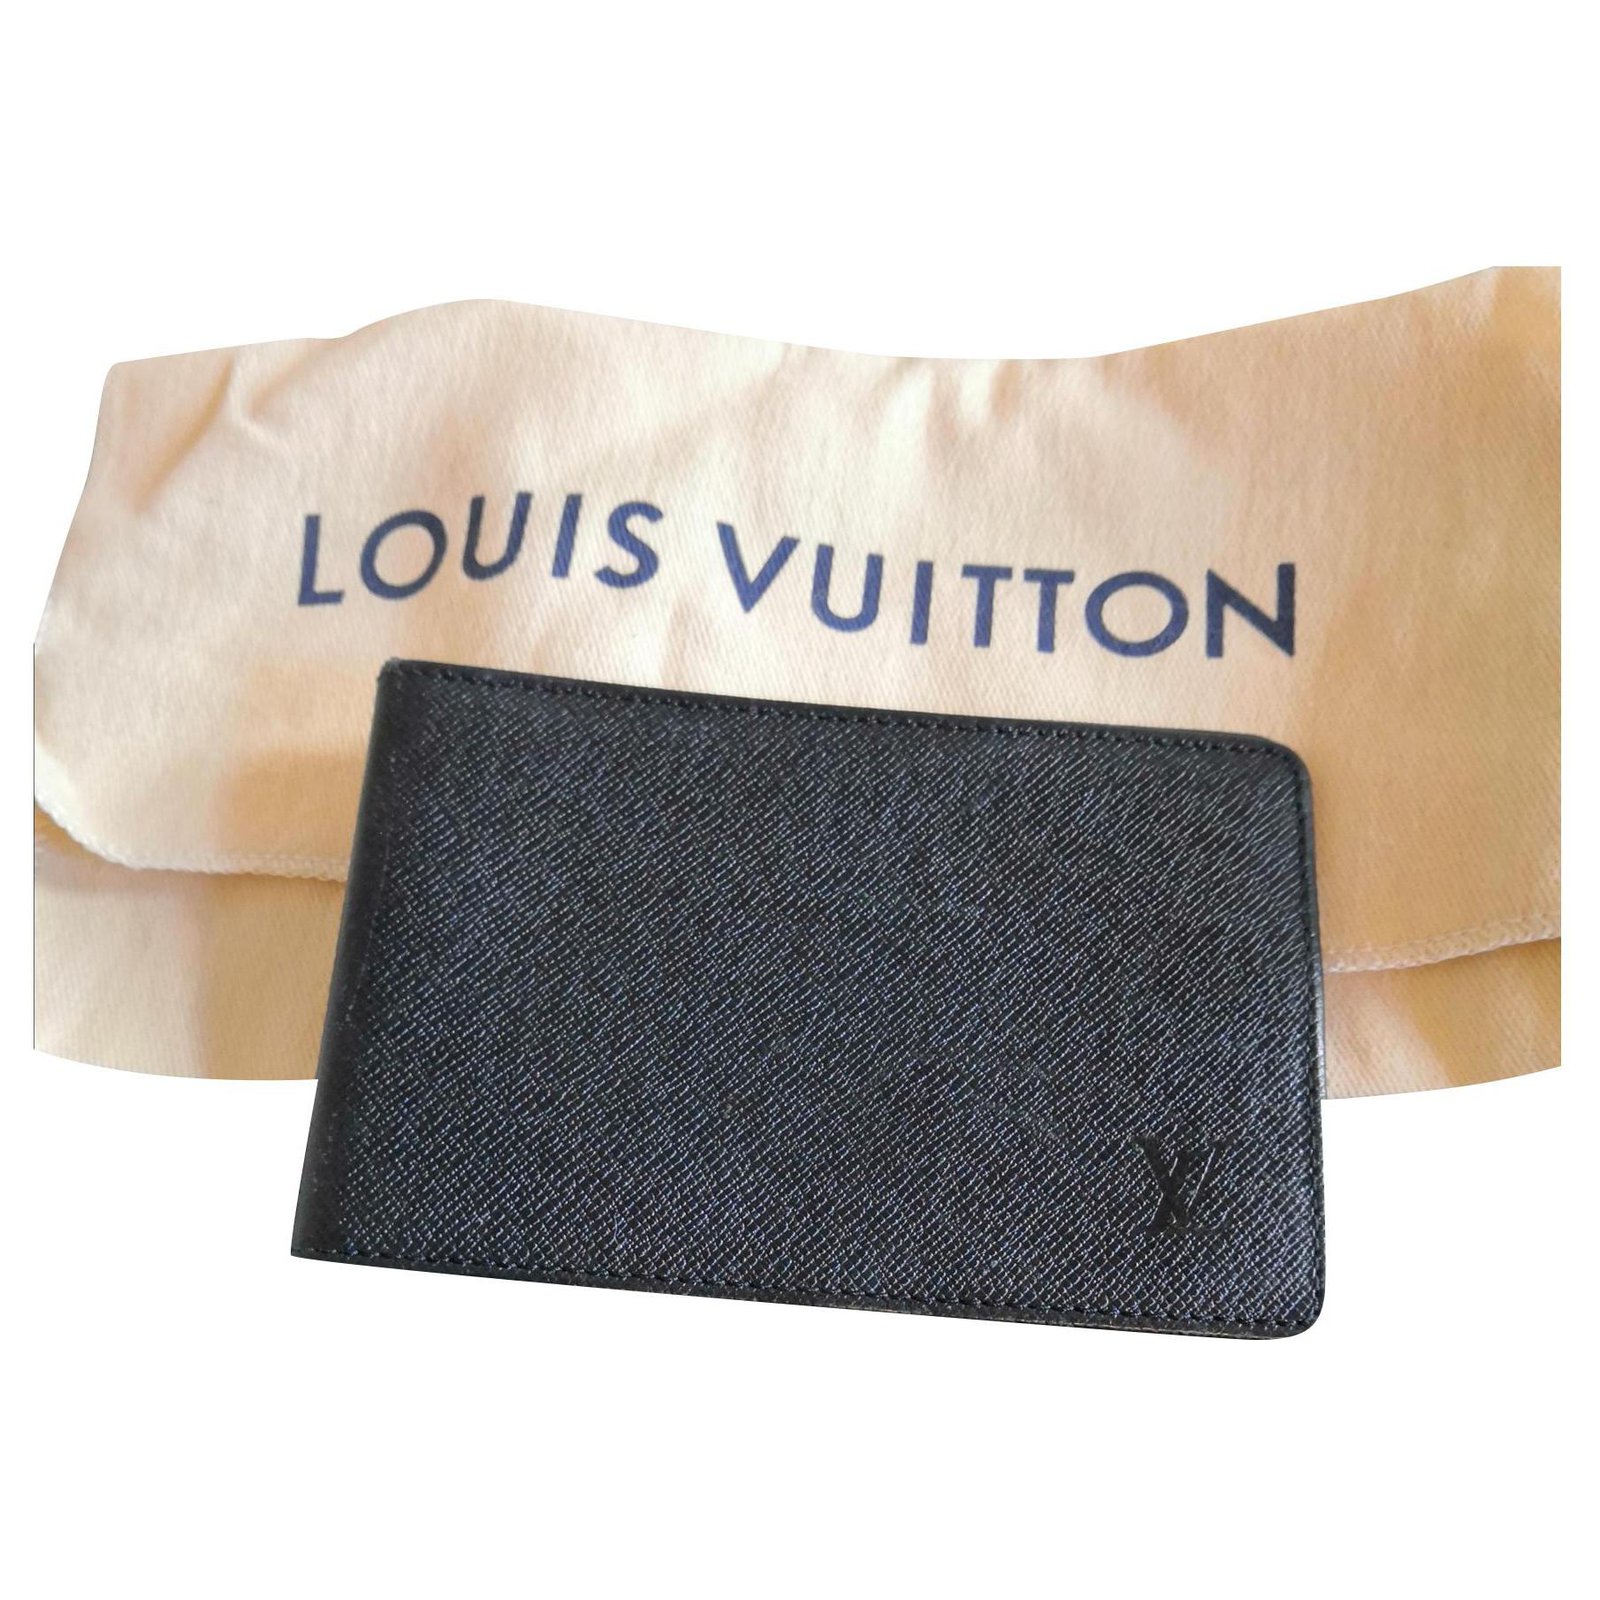 Louis Vuitton Wallet Date Code Checker